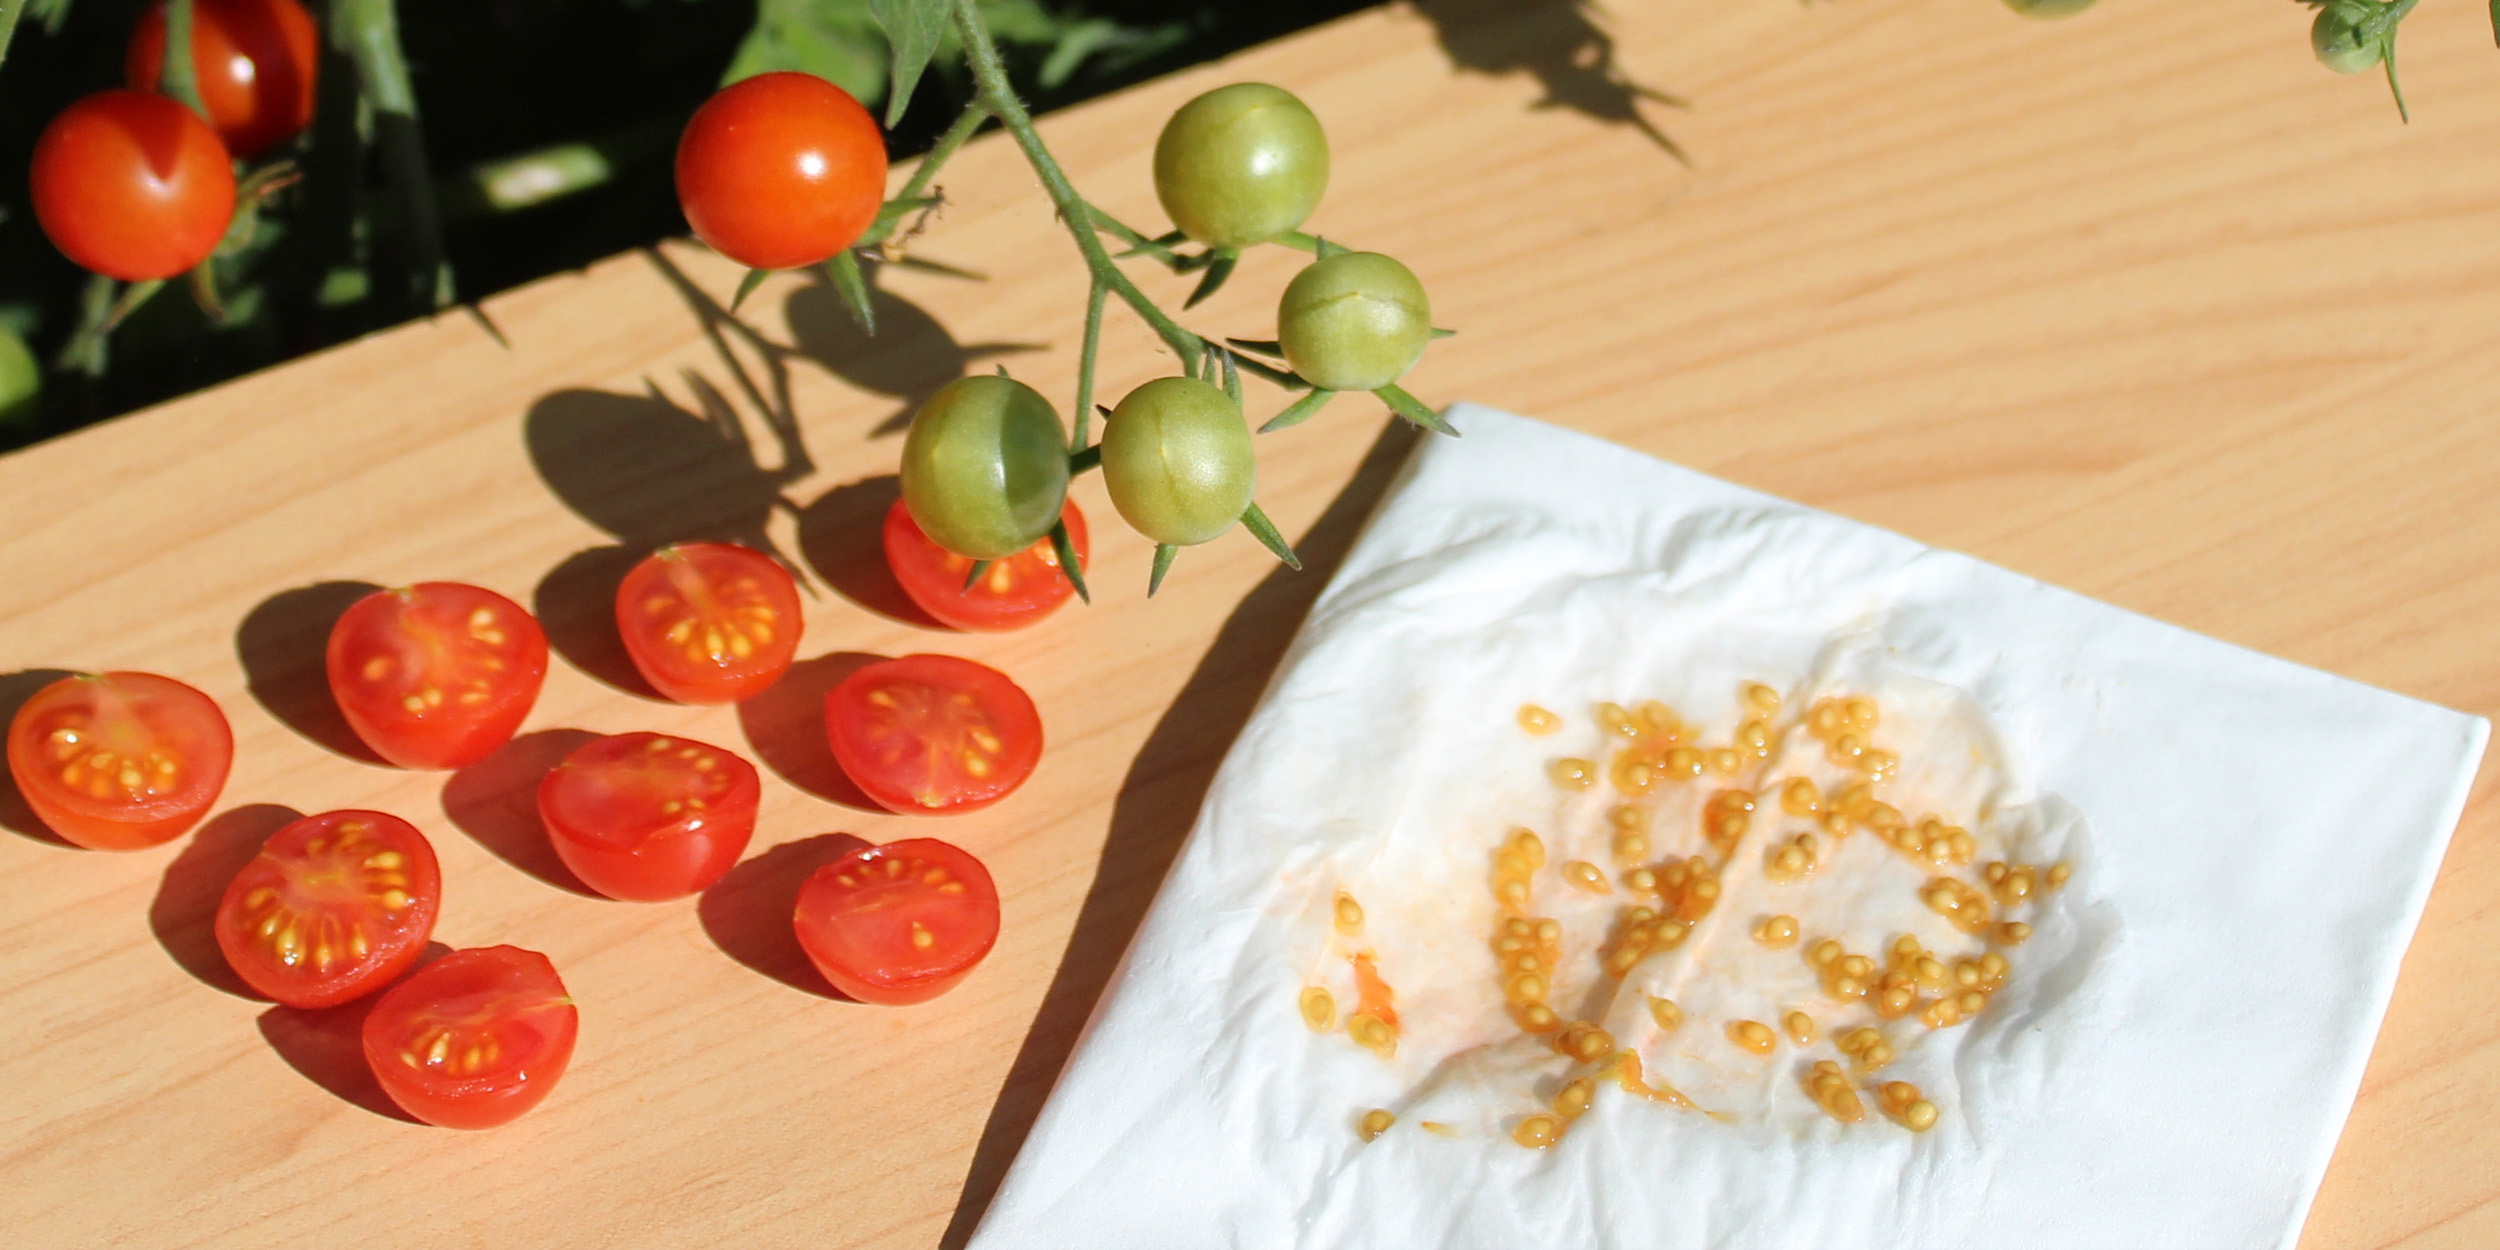 Как хранить семена помидоров?